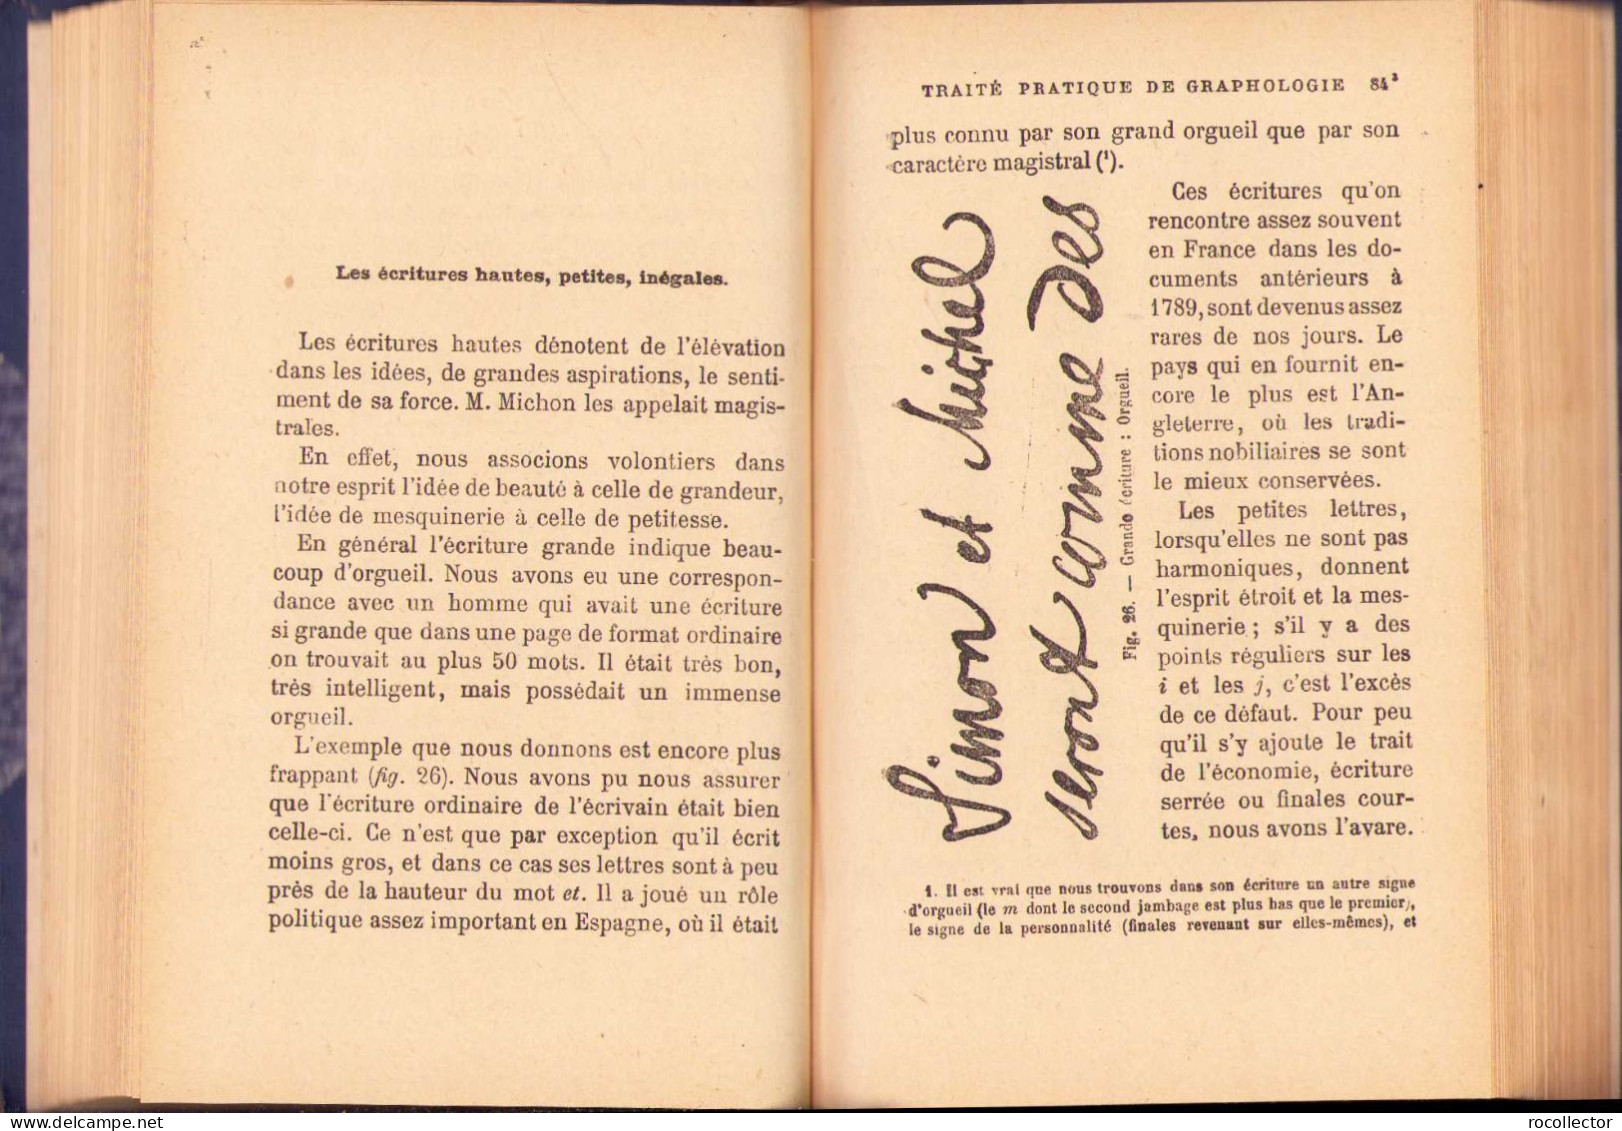 Traité Pratique de Graphologie : Étude du Caractère de l’Homme d’après son Écriture par J. Crepieux-Jamin, Paris 294SP